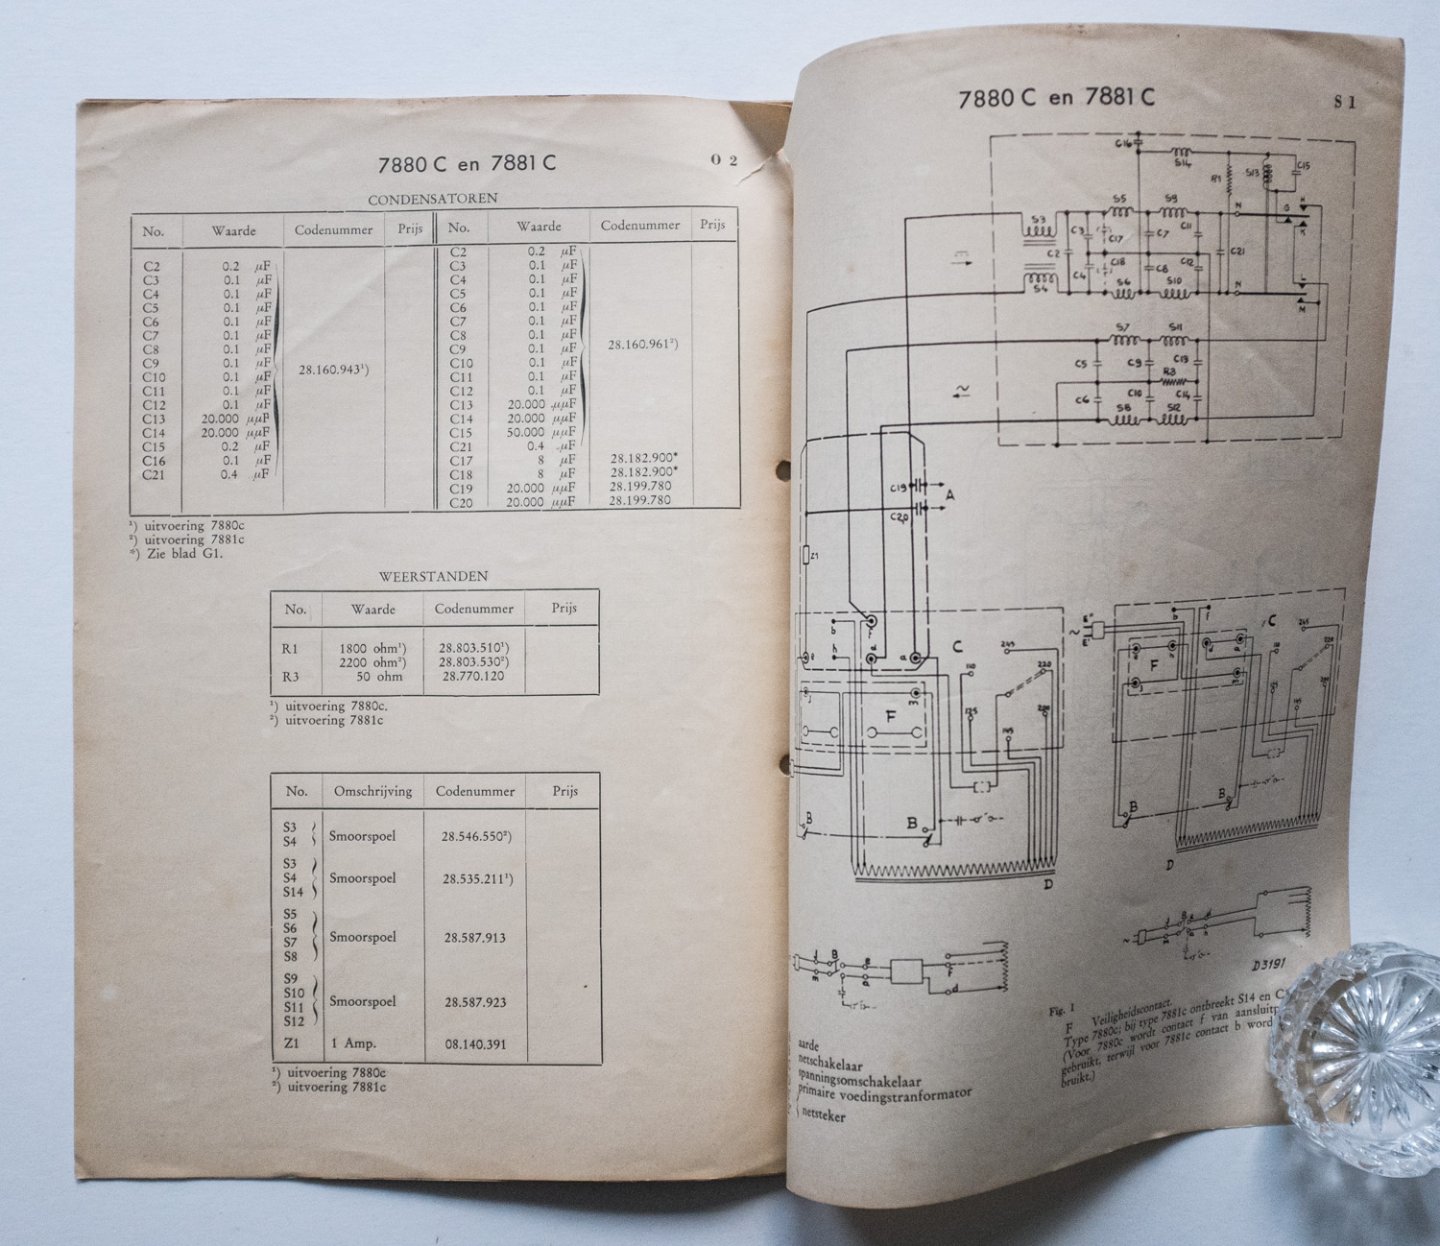  - Philips service documentatie - van de Triller-omvormer Type 7880C en 7881C